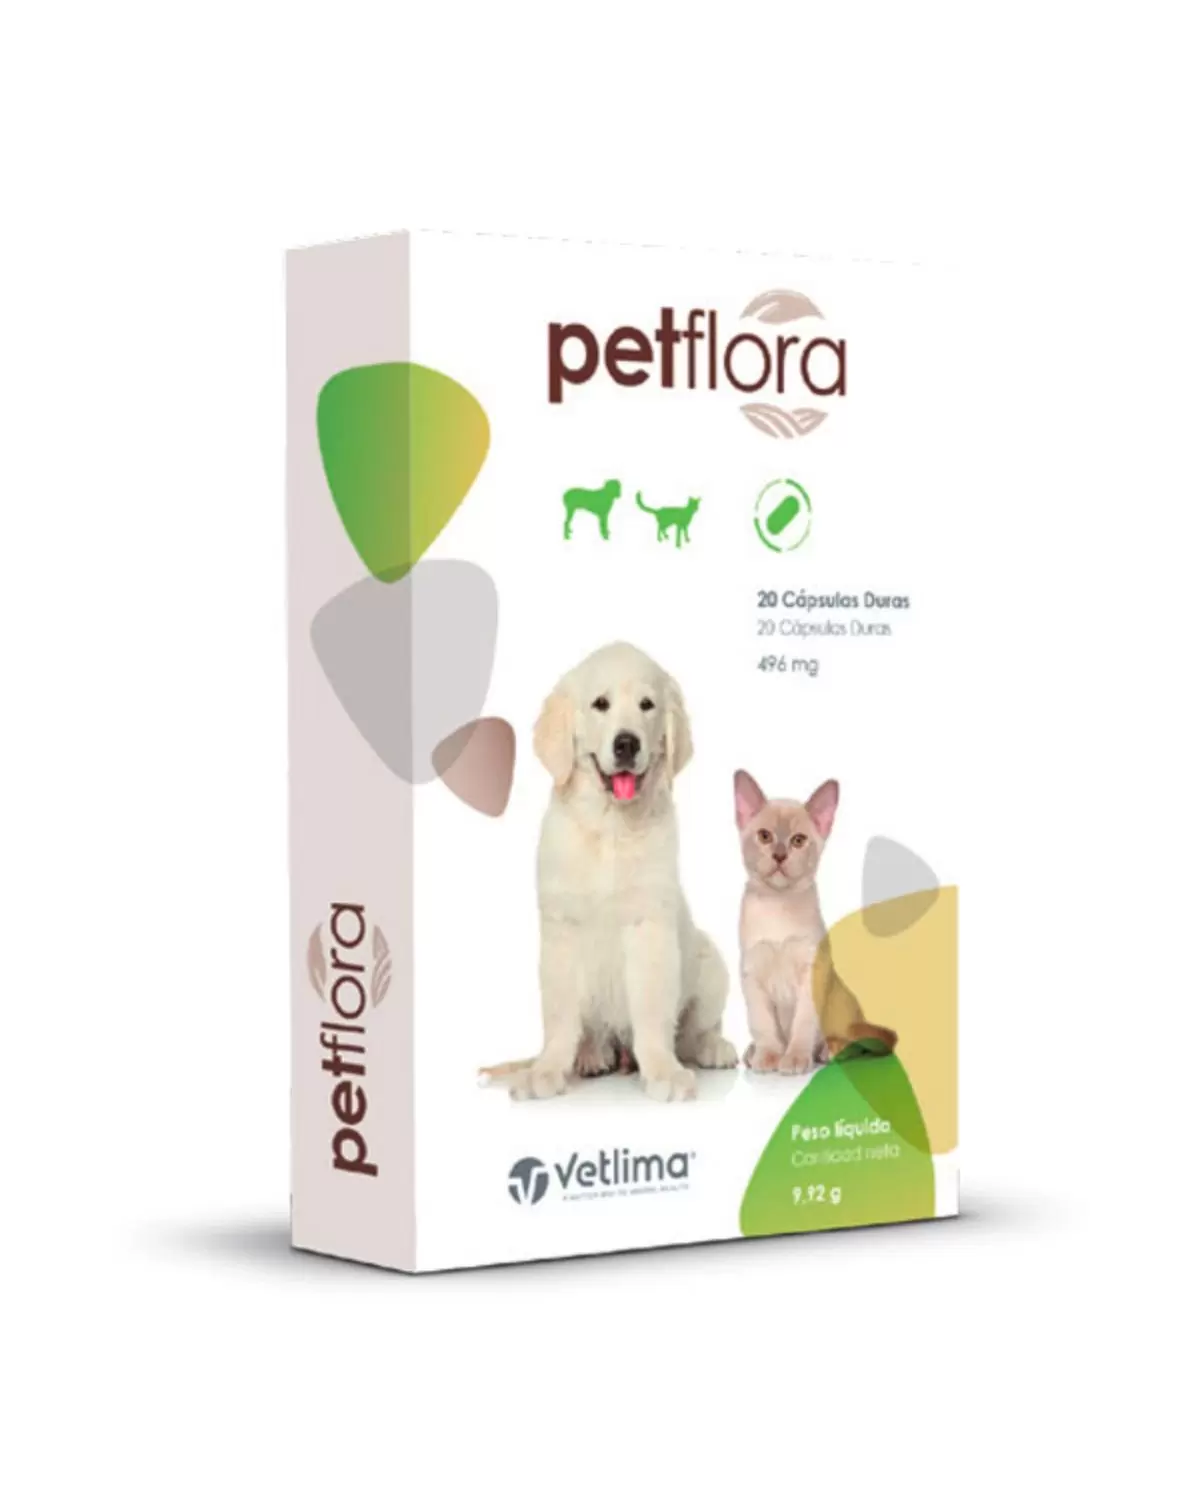 Petflora Cápsulas es un alimento compuesto complementario para perros y gatos que contiene organismos y otras sustancias que favorecen la función digestiva normal.